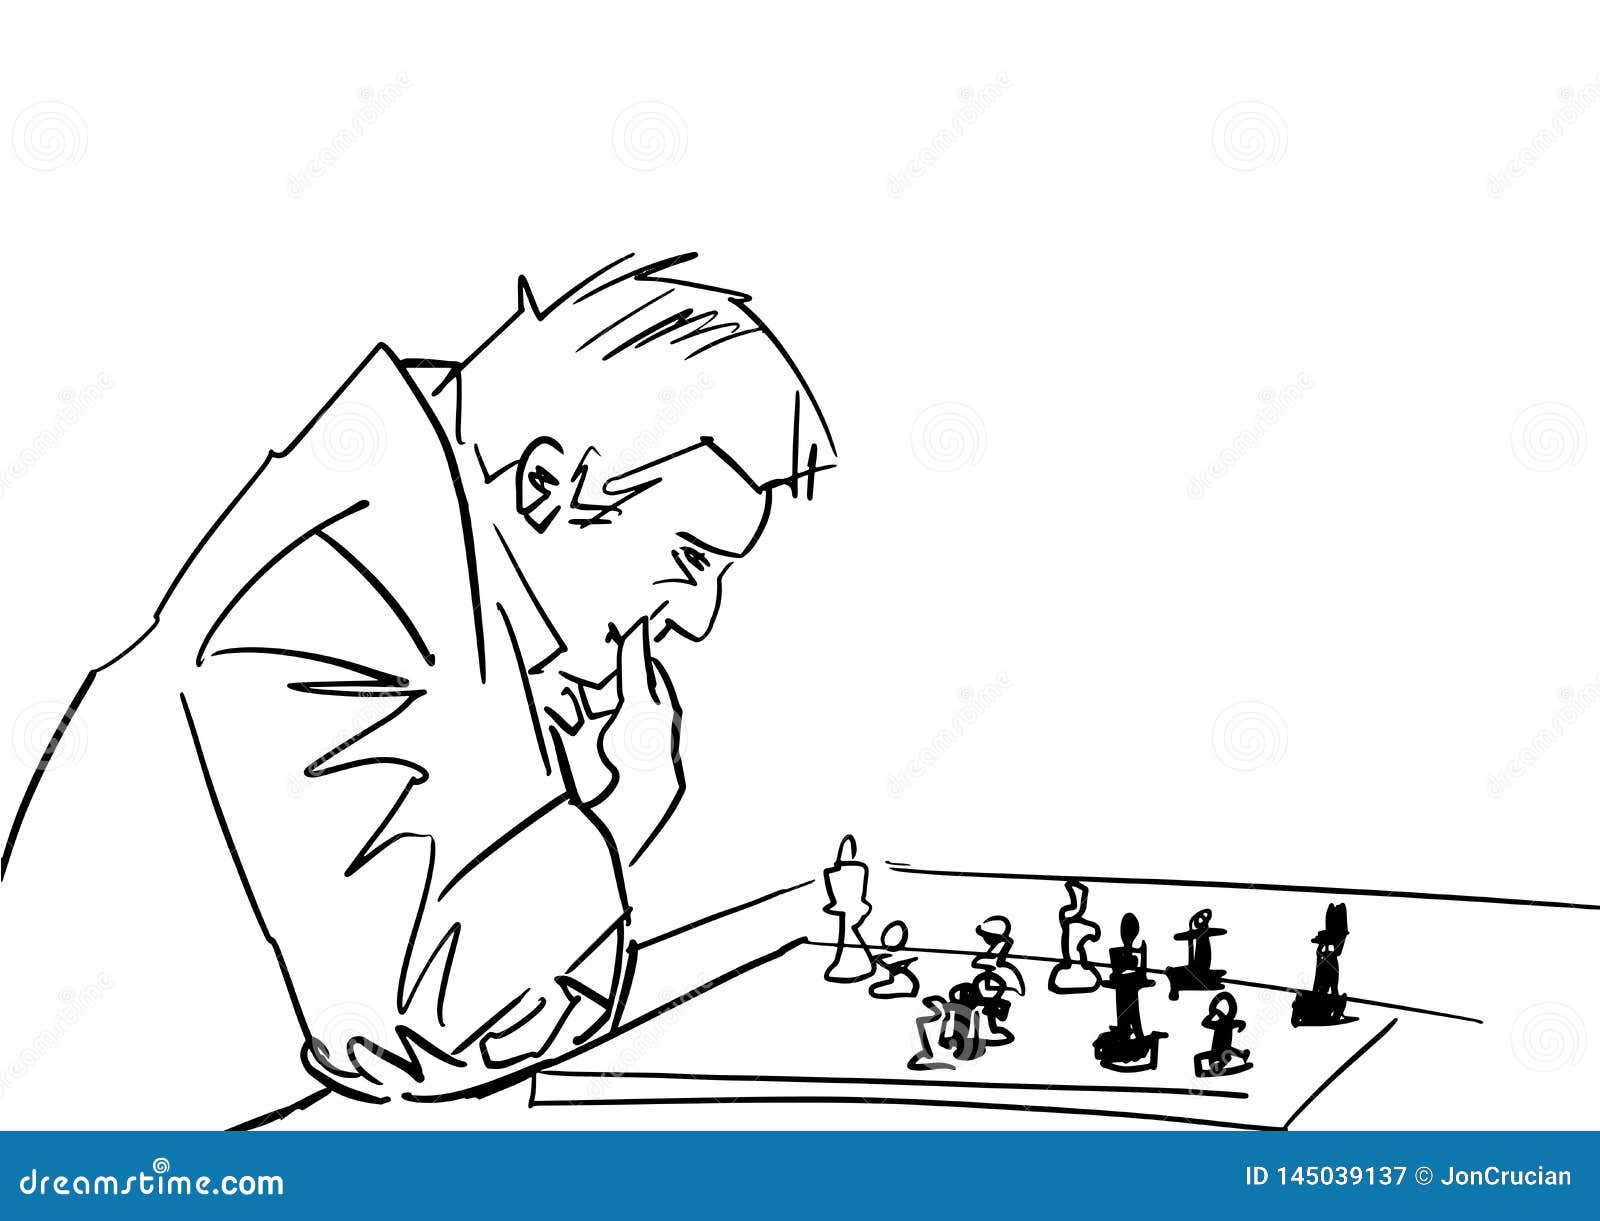 Jogador de xadrez italiano pensativo contemplando movimento estratégico com  tabuleiro de xadrez em vista